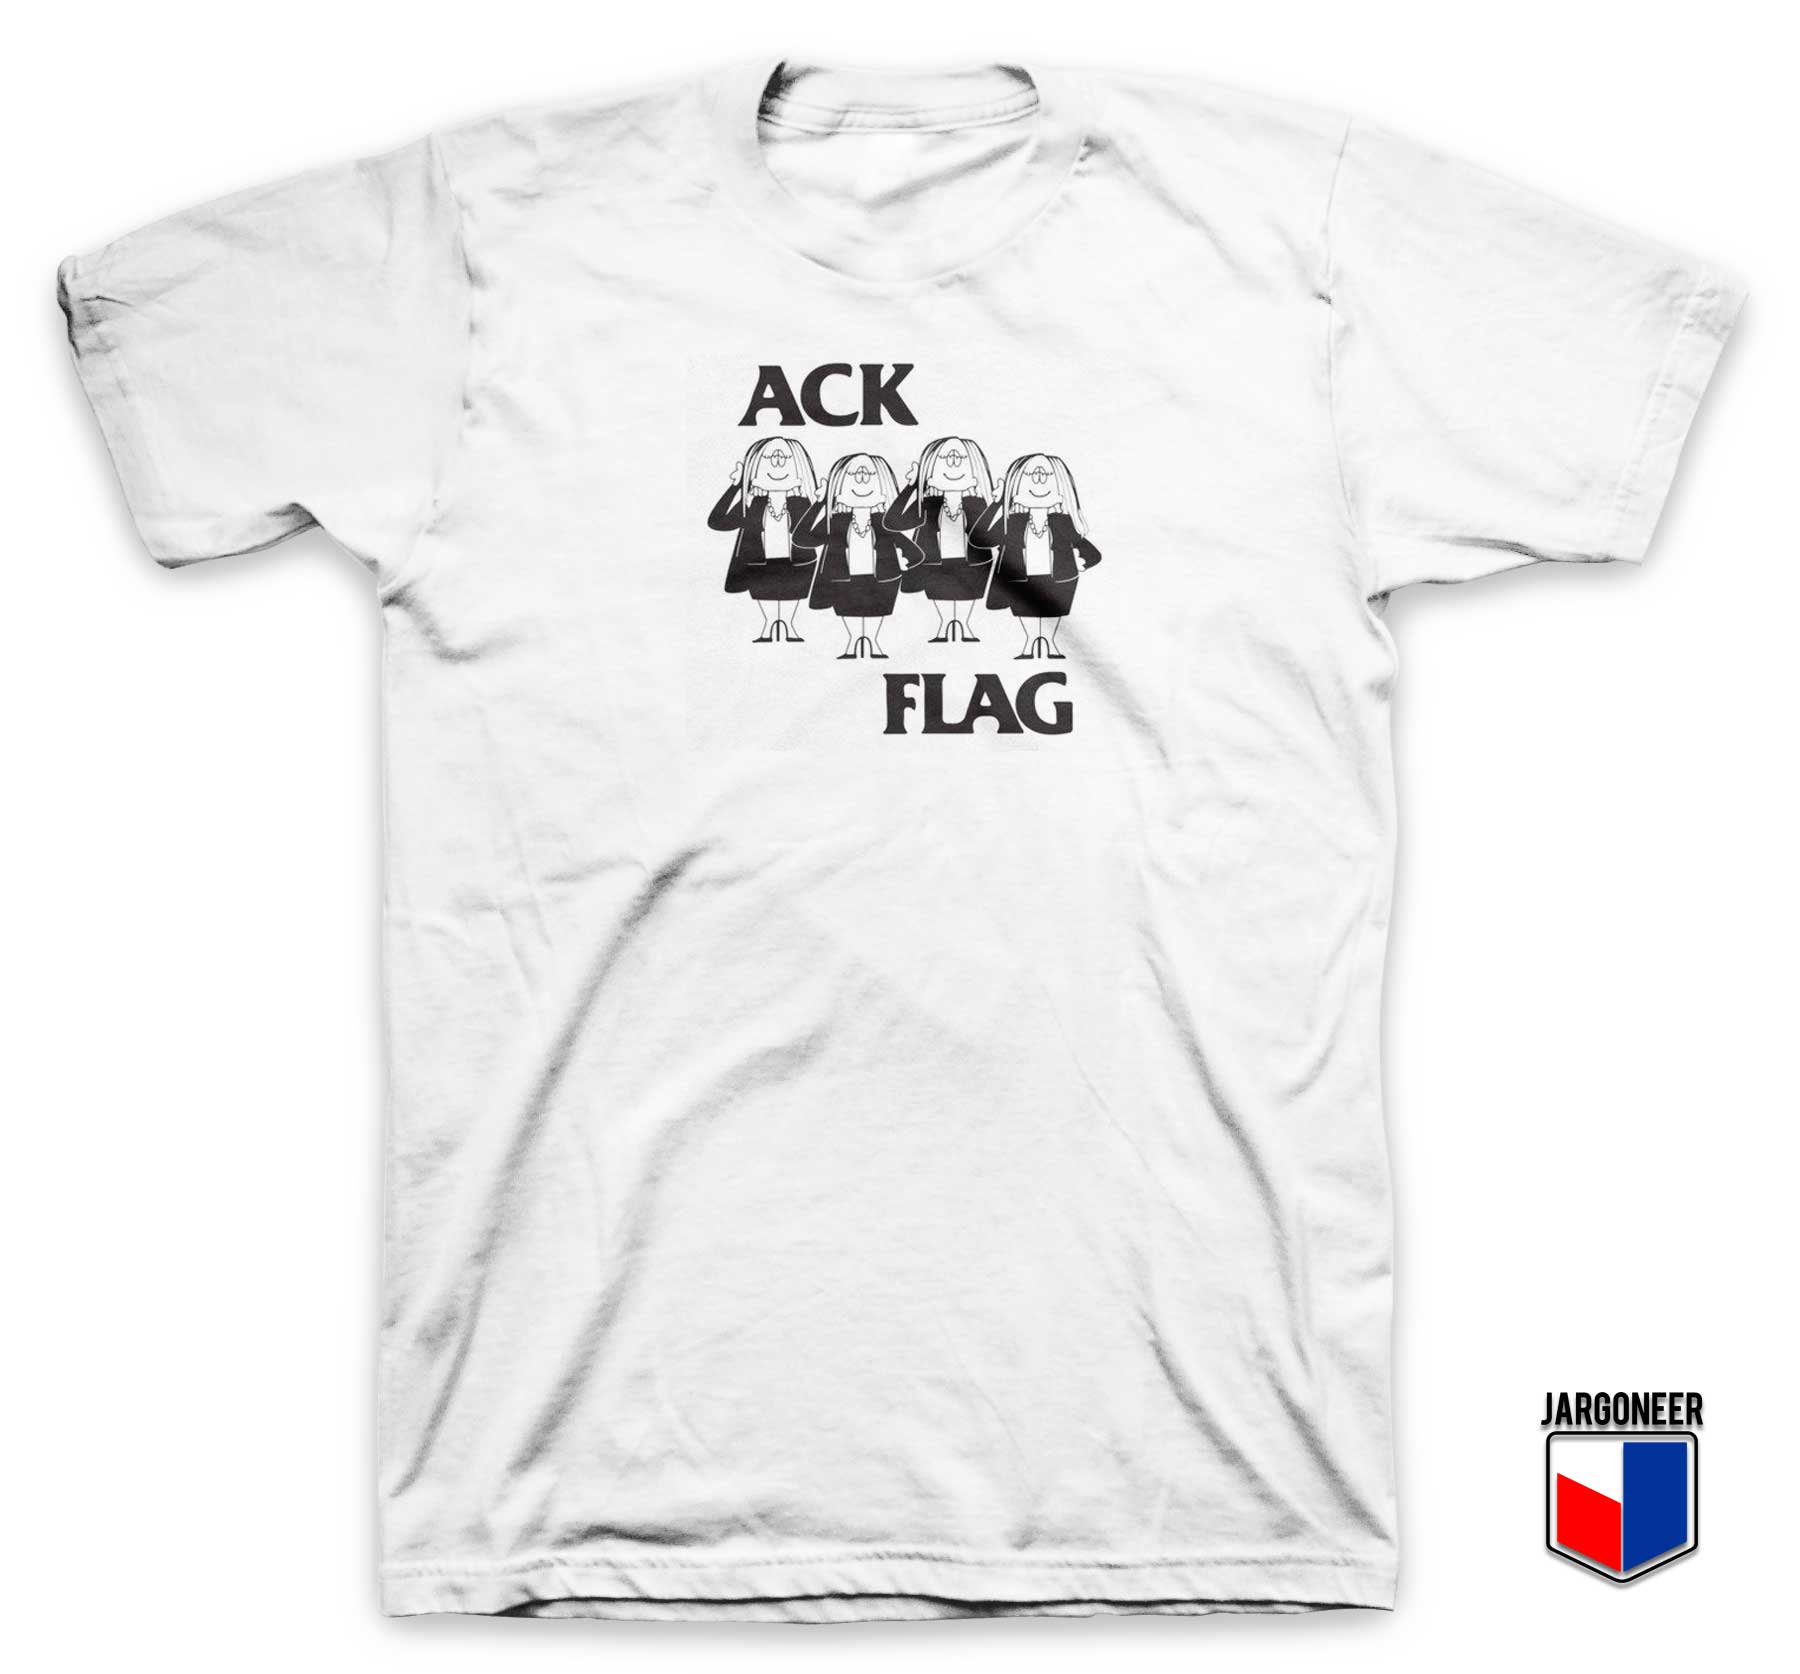 Cathy Ack Flag T Shirt - Shop Unique Graphic Cool Shirt Designs